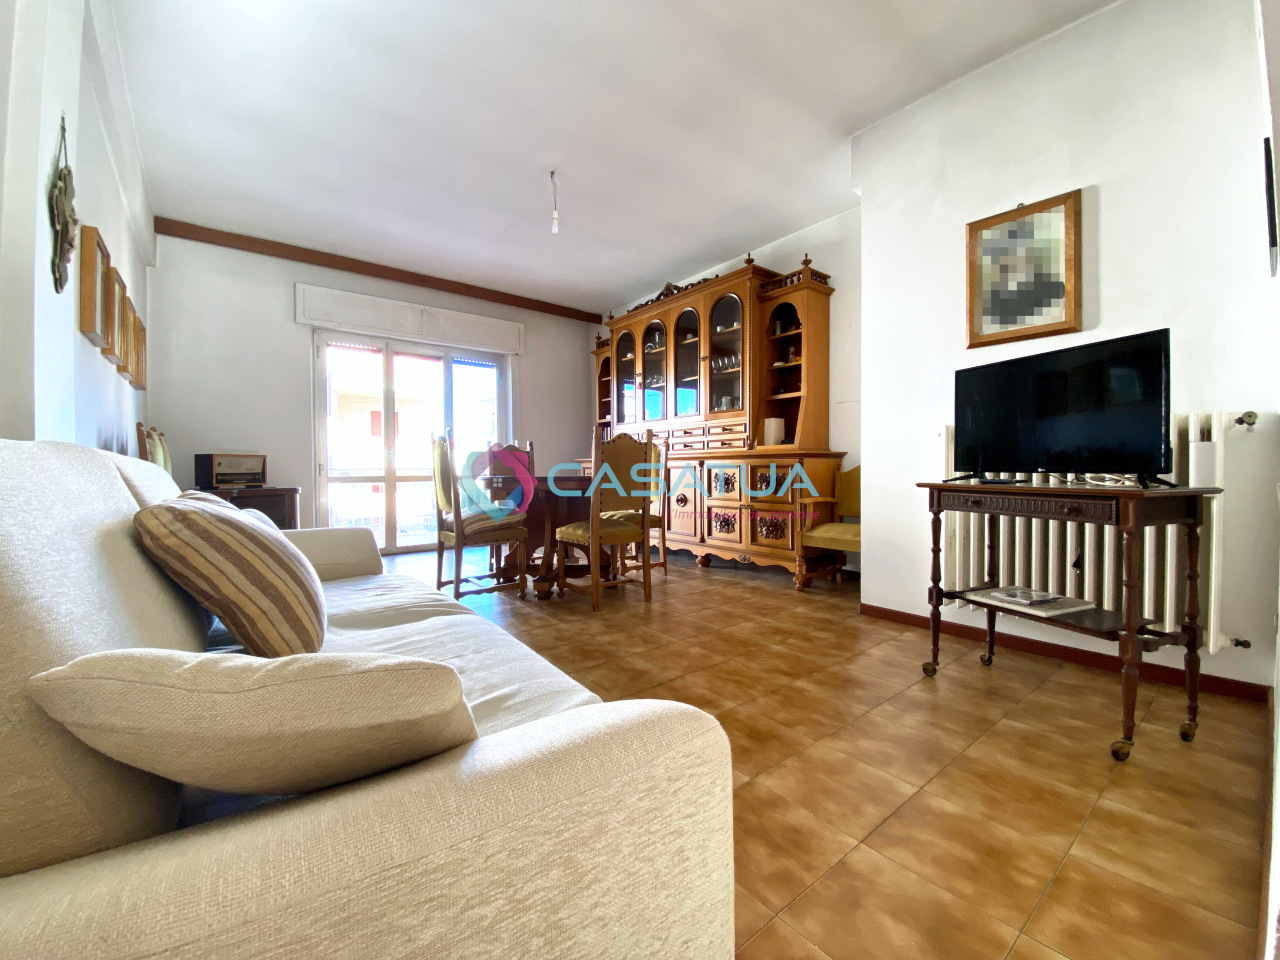 Appartamento in vendita a Martinsicuro, 5 locali, prezzo € 118.000 | PortaleAgenzieImmobiliari.it